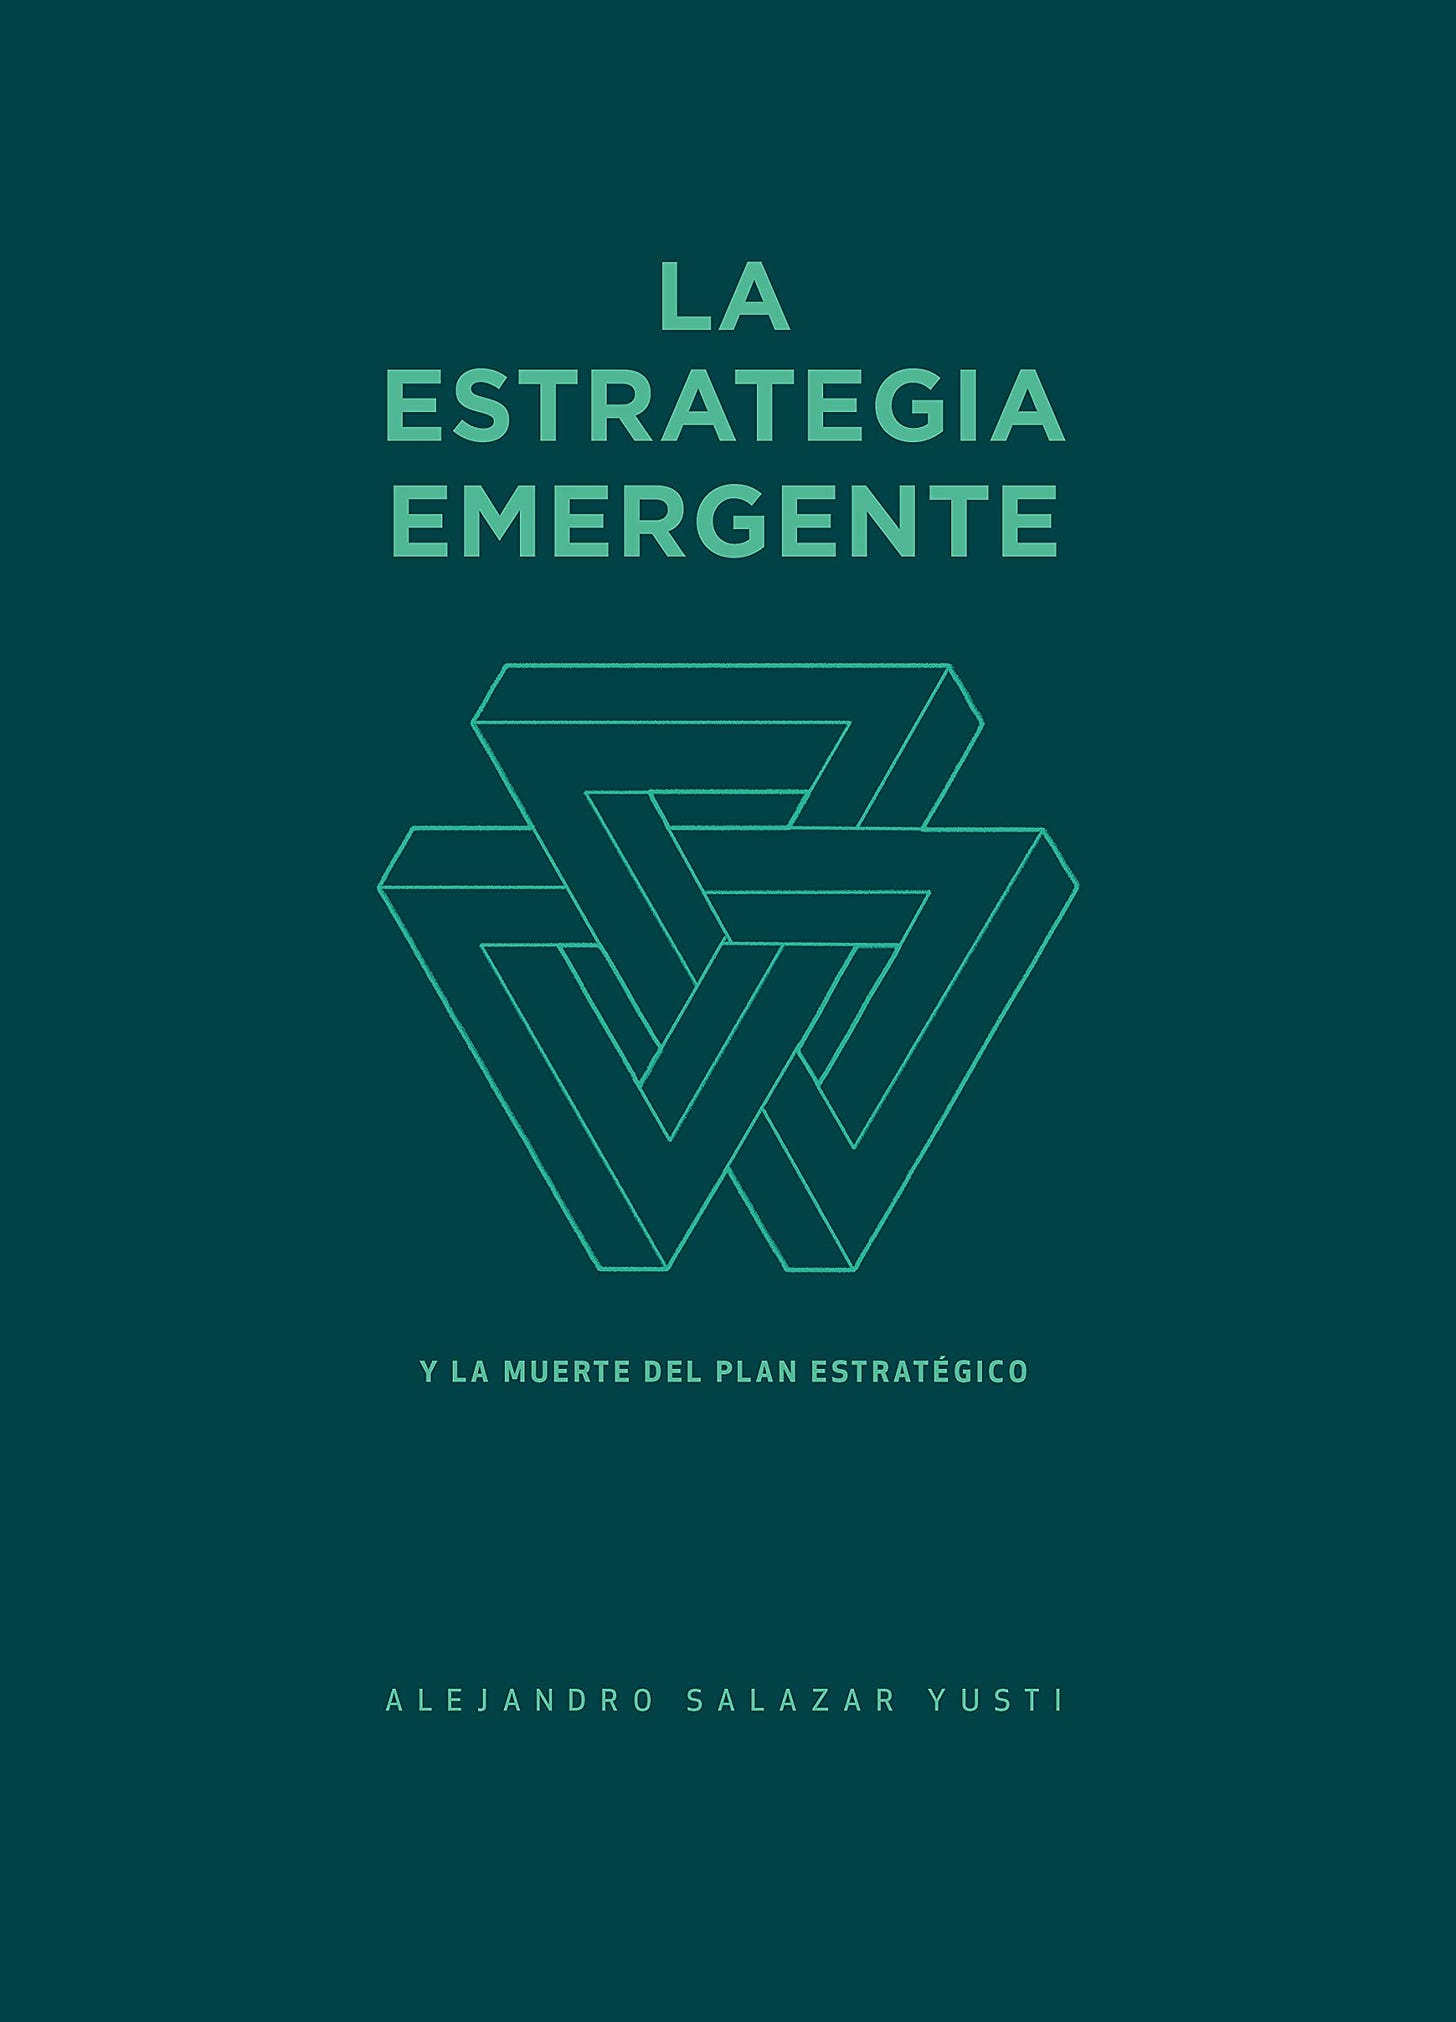 La Estrategia Emergente: Y la muerte del Plan Estratégico by Alejandro  Salazar Yusti | Goodreads